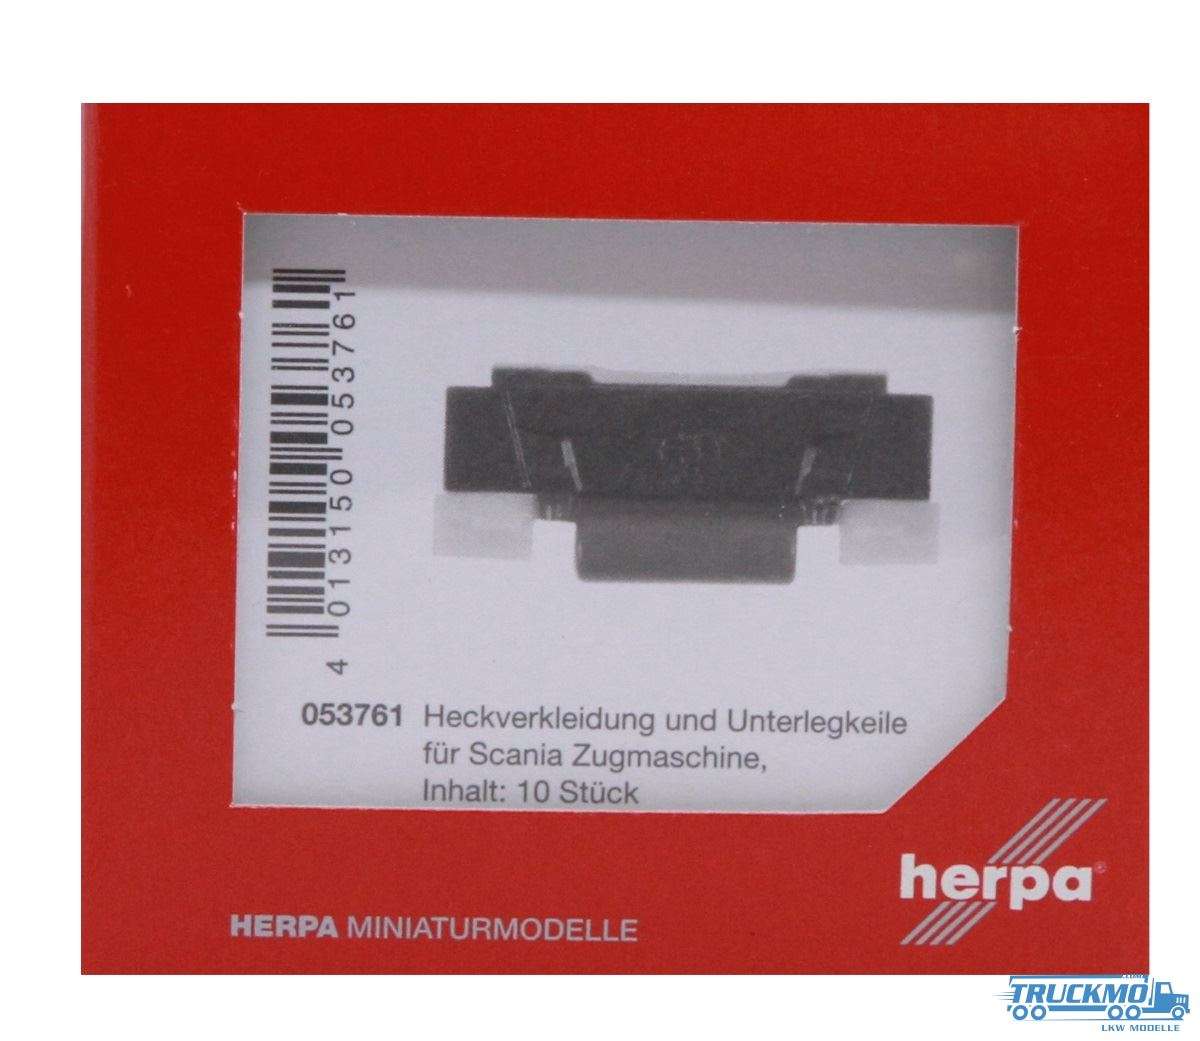 Herpa Heckverkleidung und Unterlegkeile für Scania Zugmaschine 053761